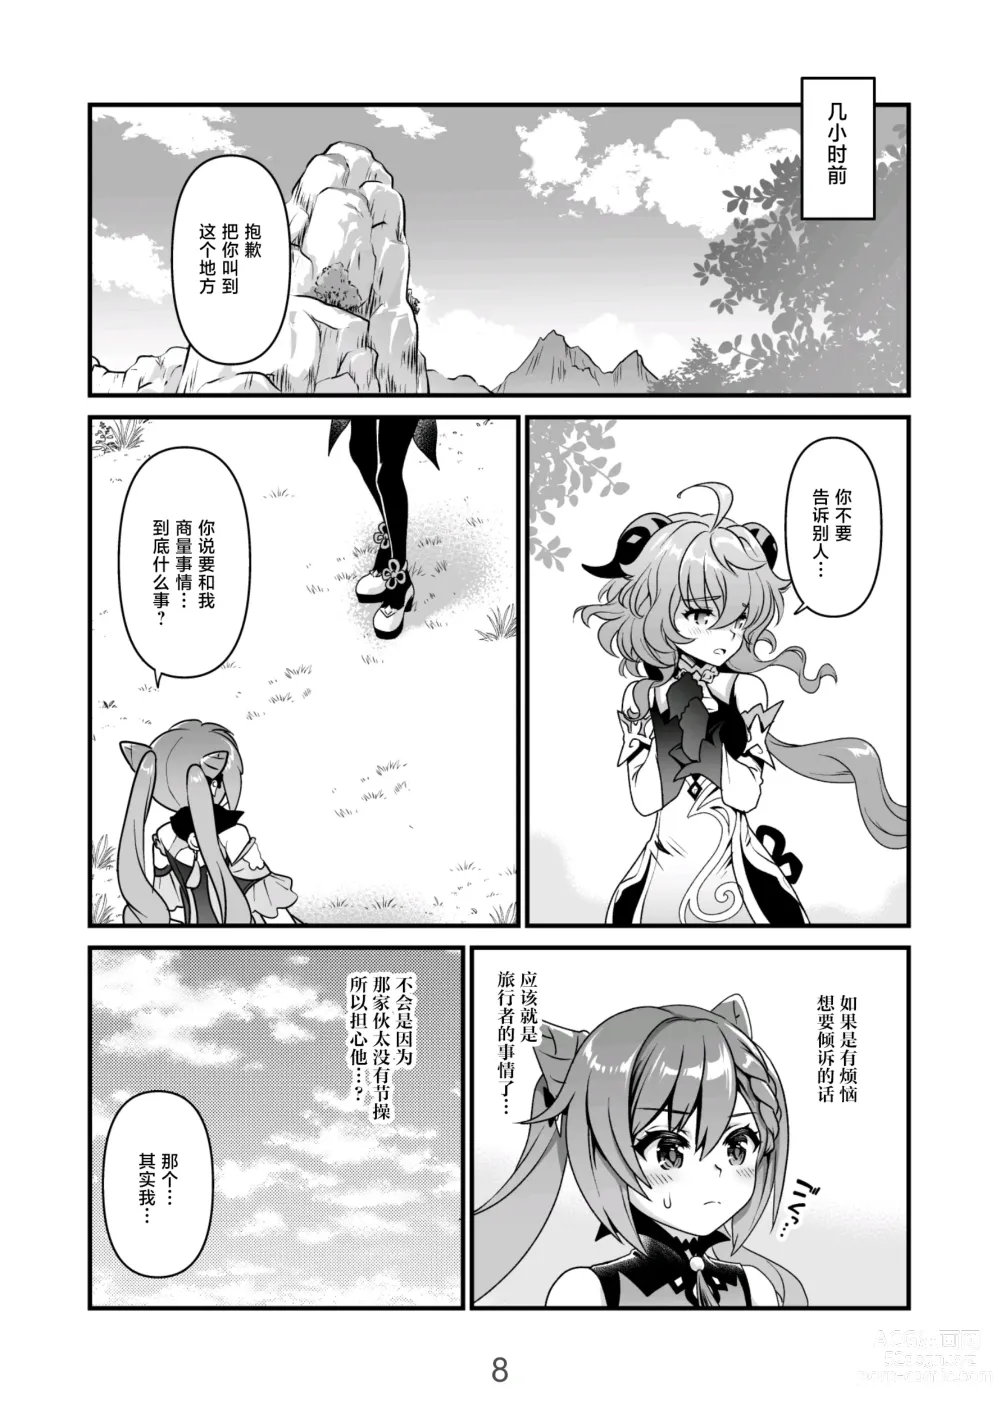 Page 8 of doujinshi Koisuru Kirin no Amaama Milk